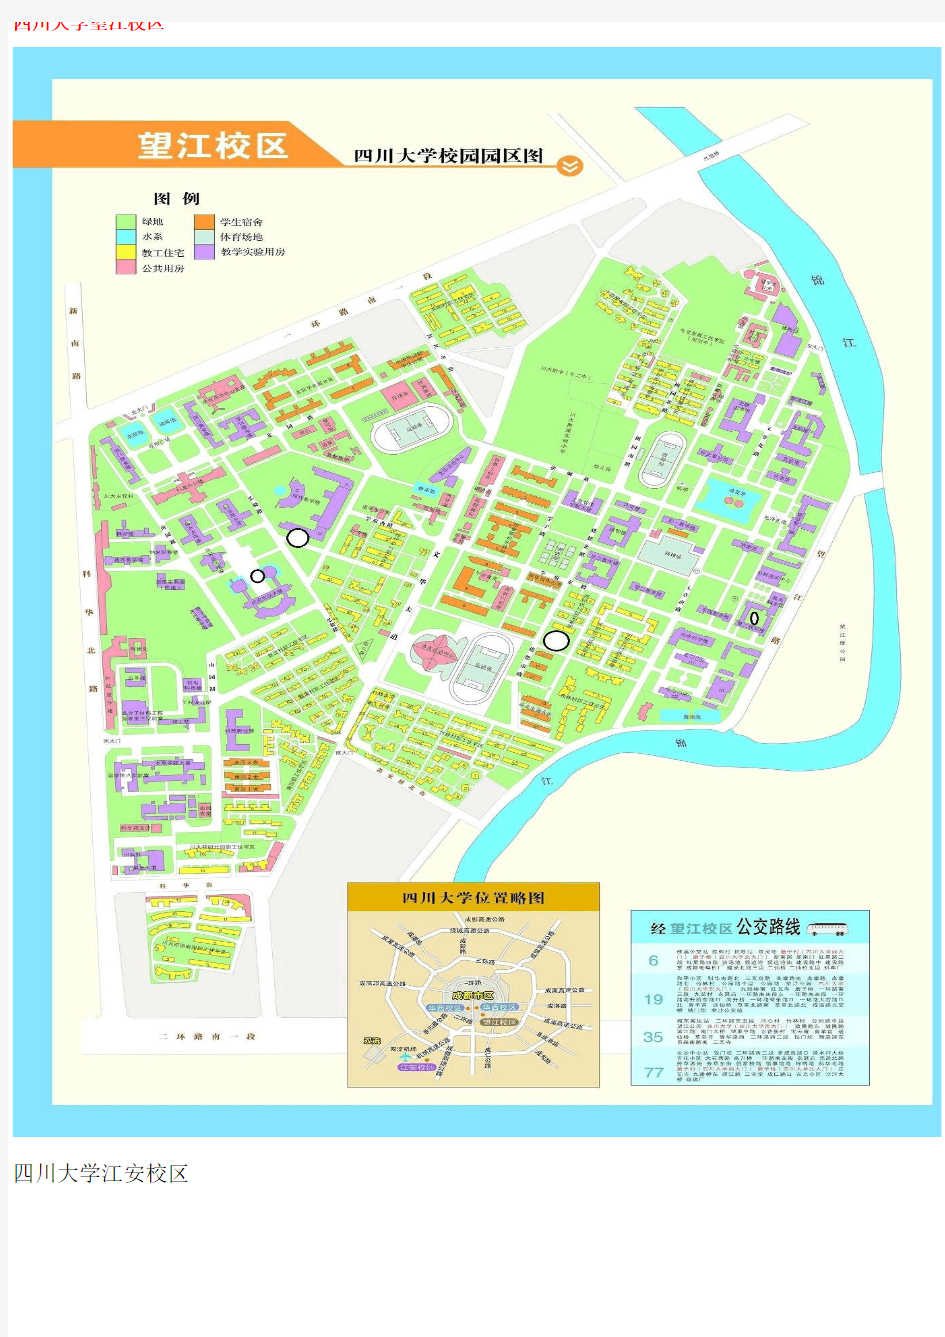 四川大学校园园区地图